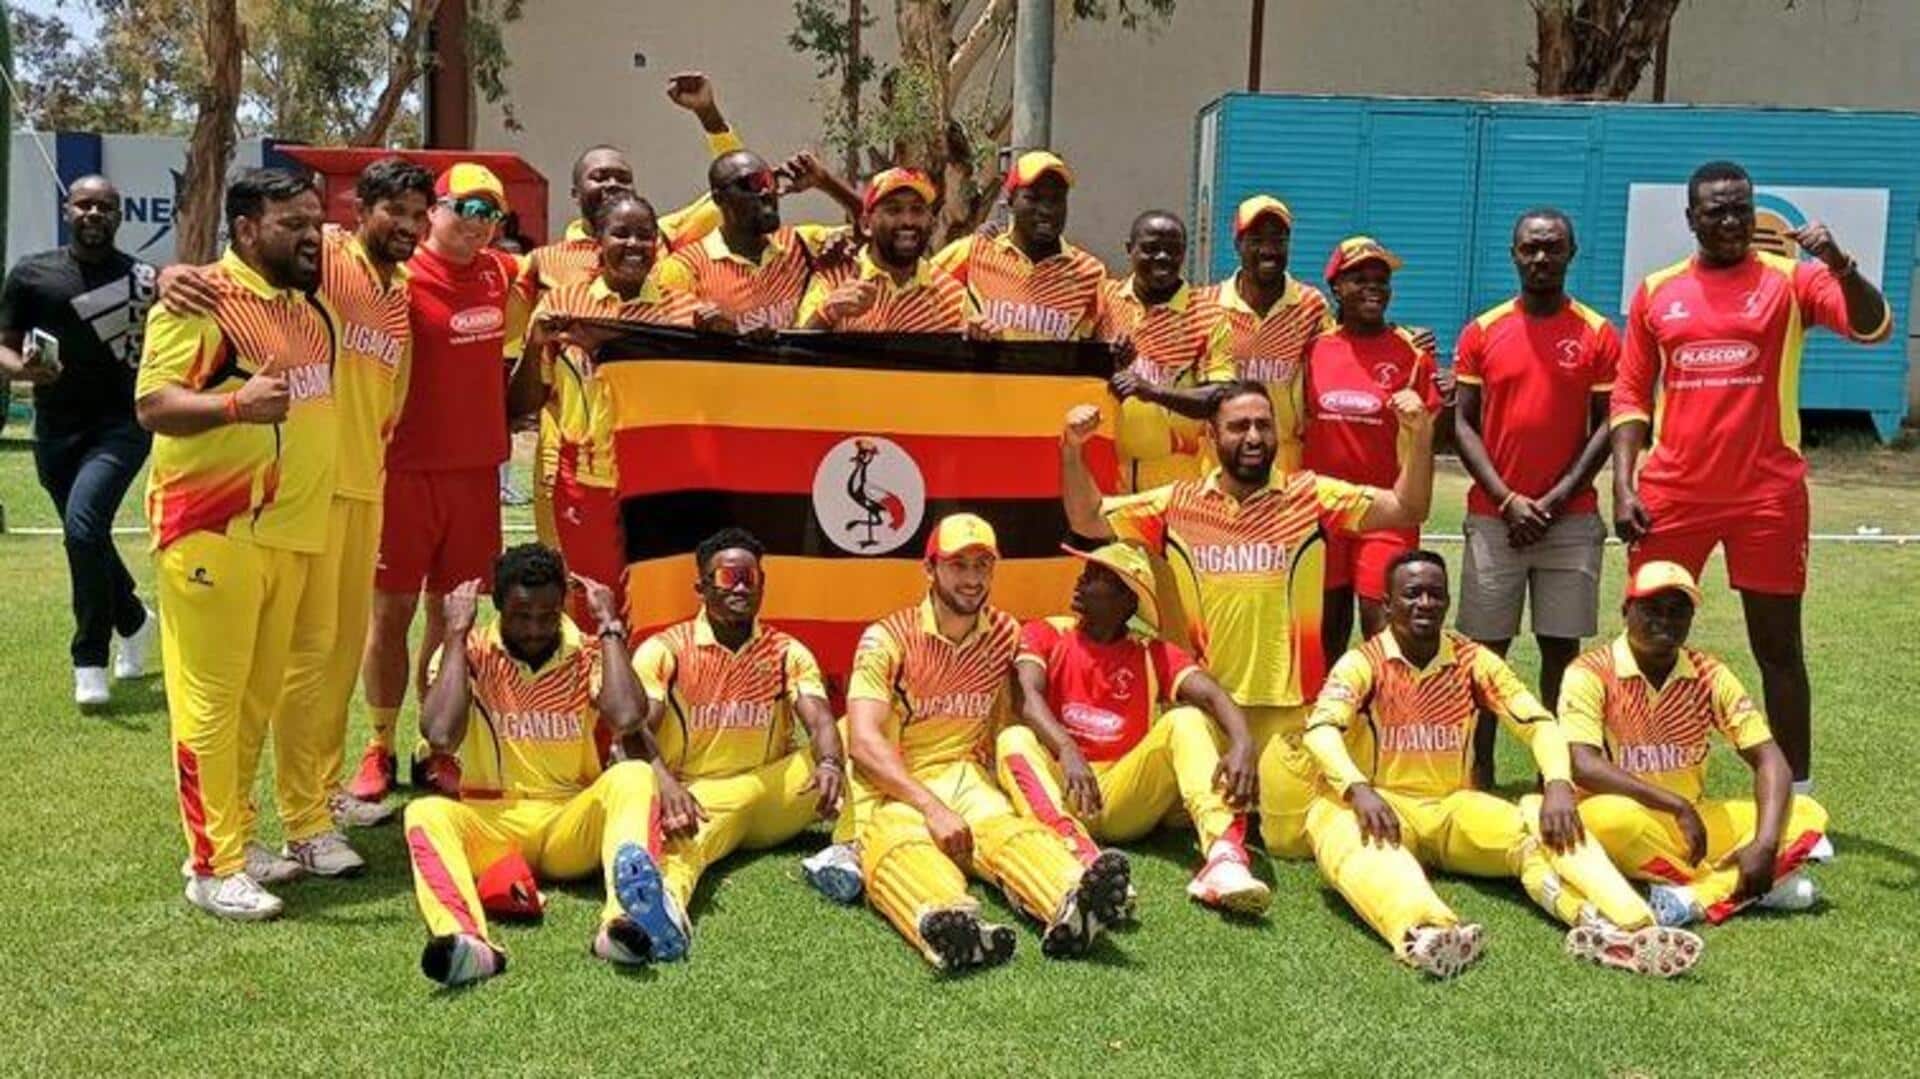 युगांडा क्रिकेट टीम ने रचा इतिहास, टी-20 विश्व कप के लिए पहली बार किया क्वालीफाई